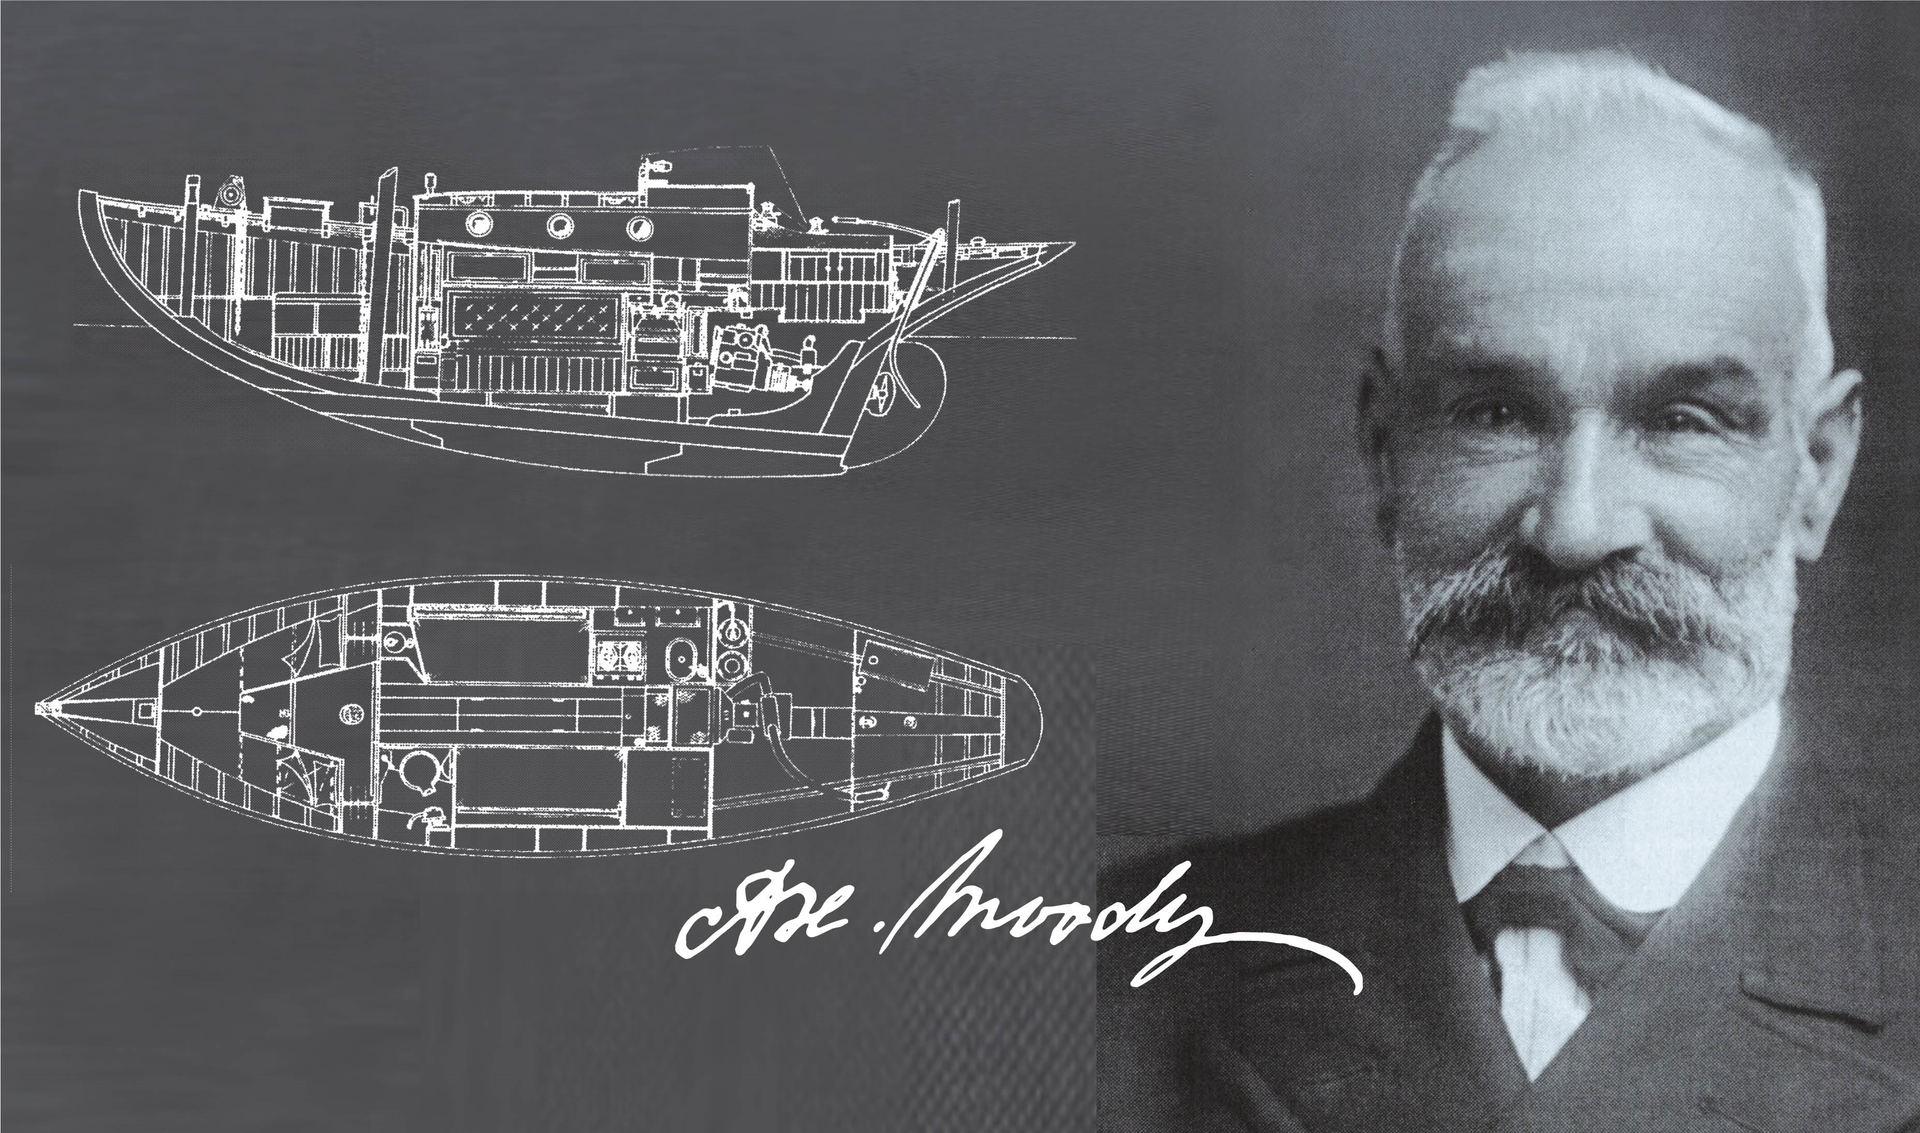 Dünyanın en eski yelkenli yat markalarından biri olan Moody yelkenli yatların tarihi